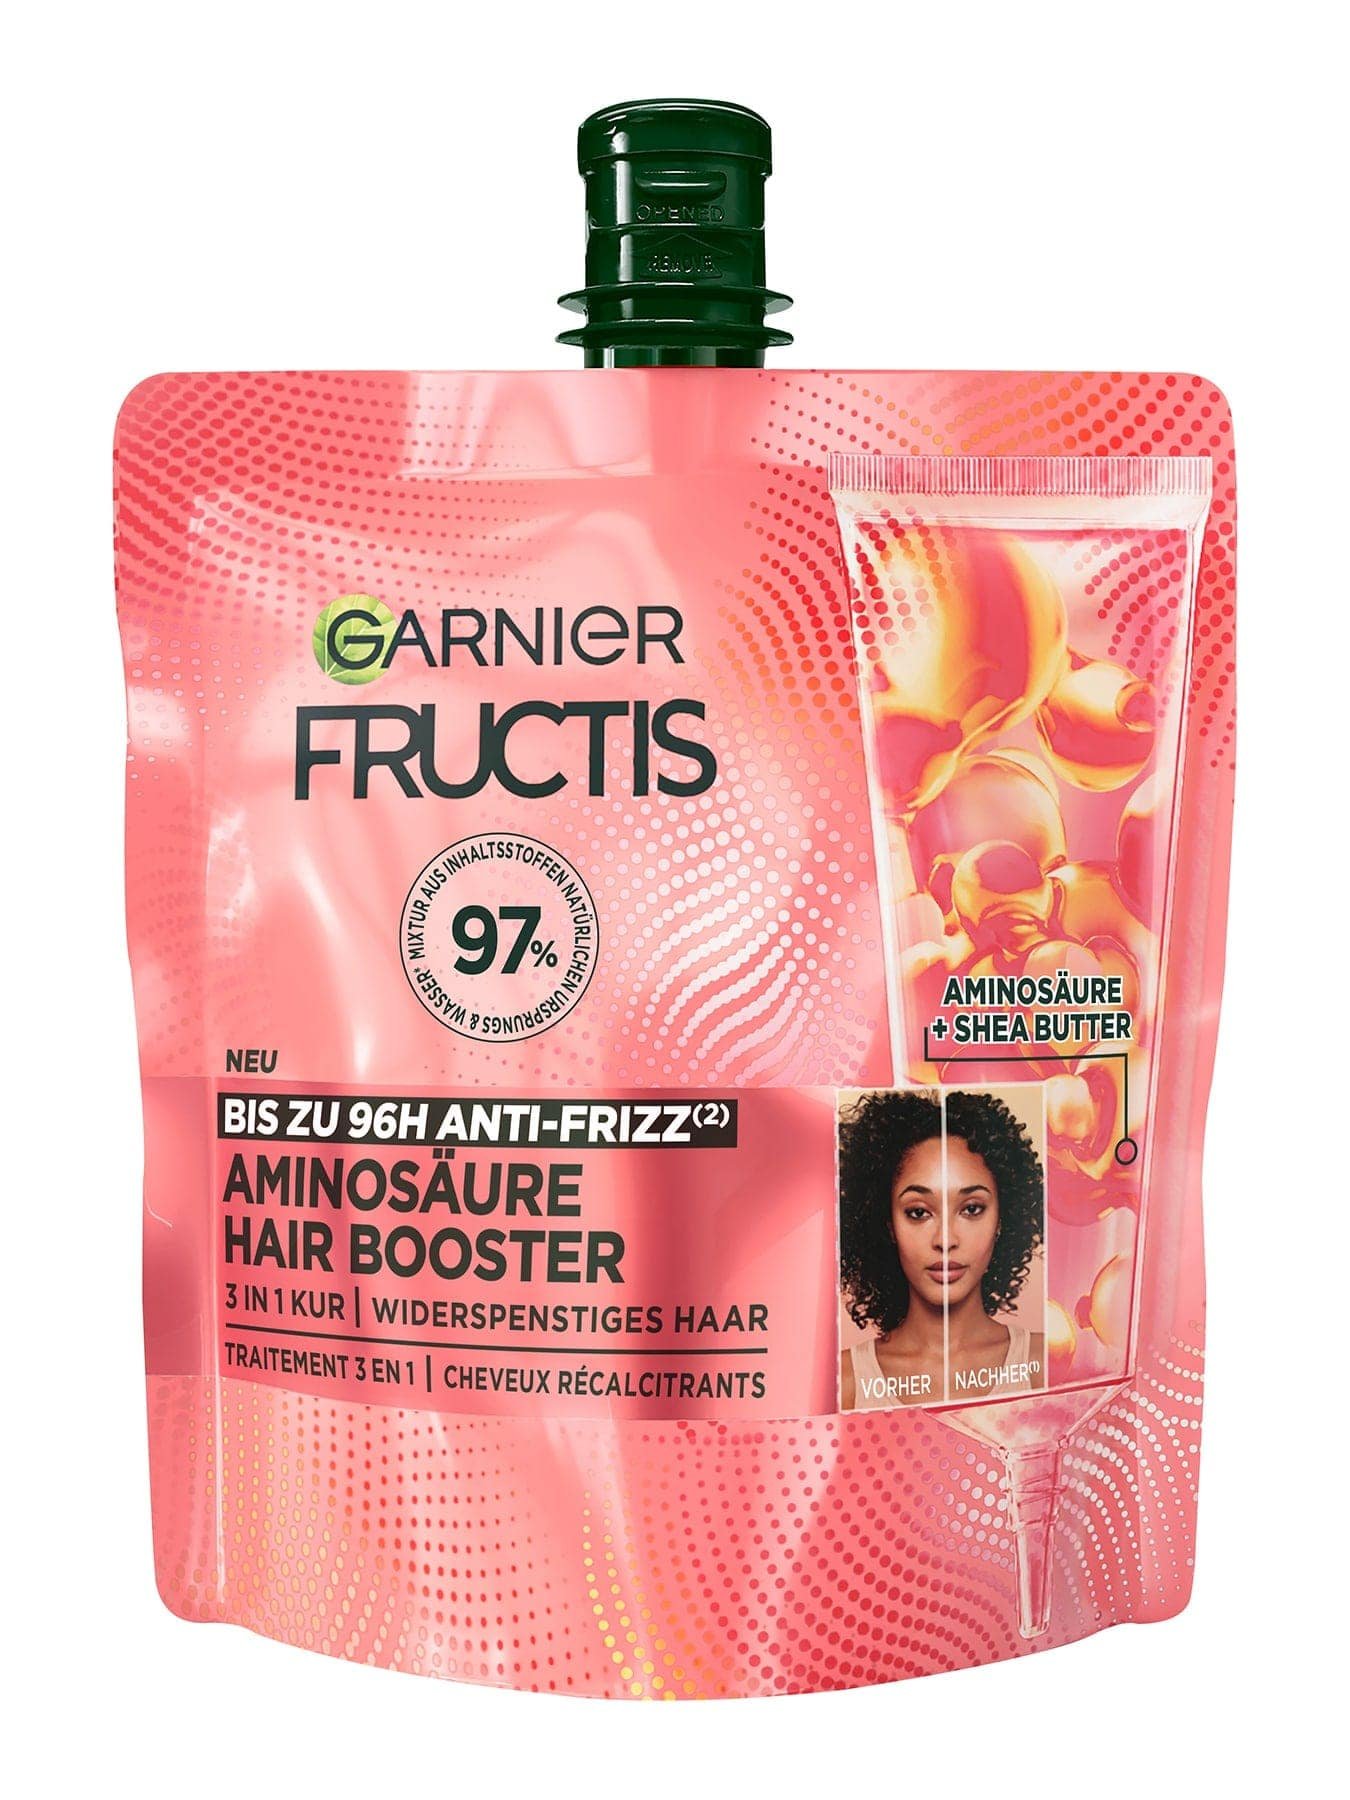 Garnier Fructis Hair Booster Aminosäure Produktverpackung vorne